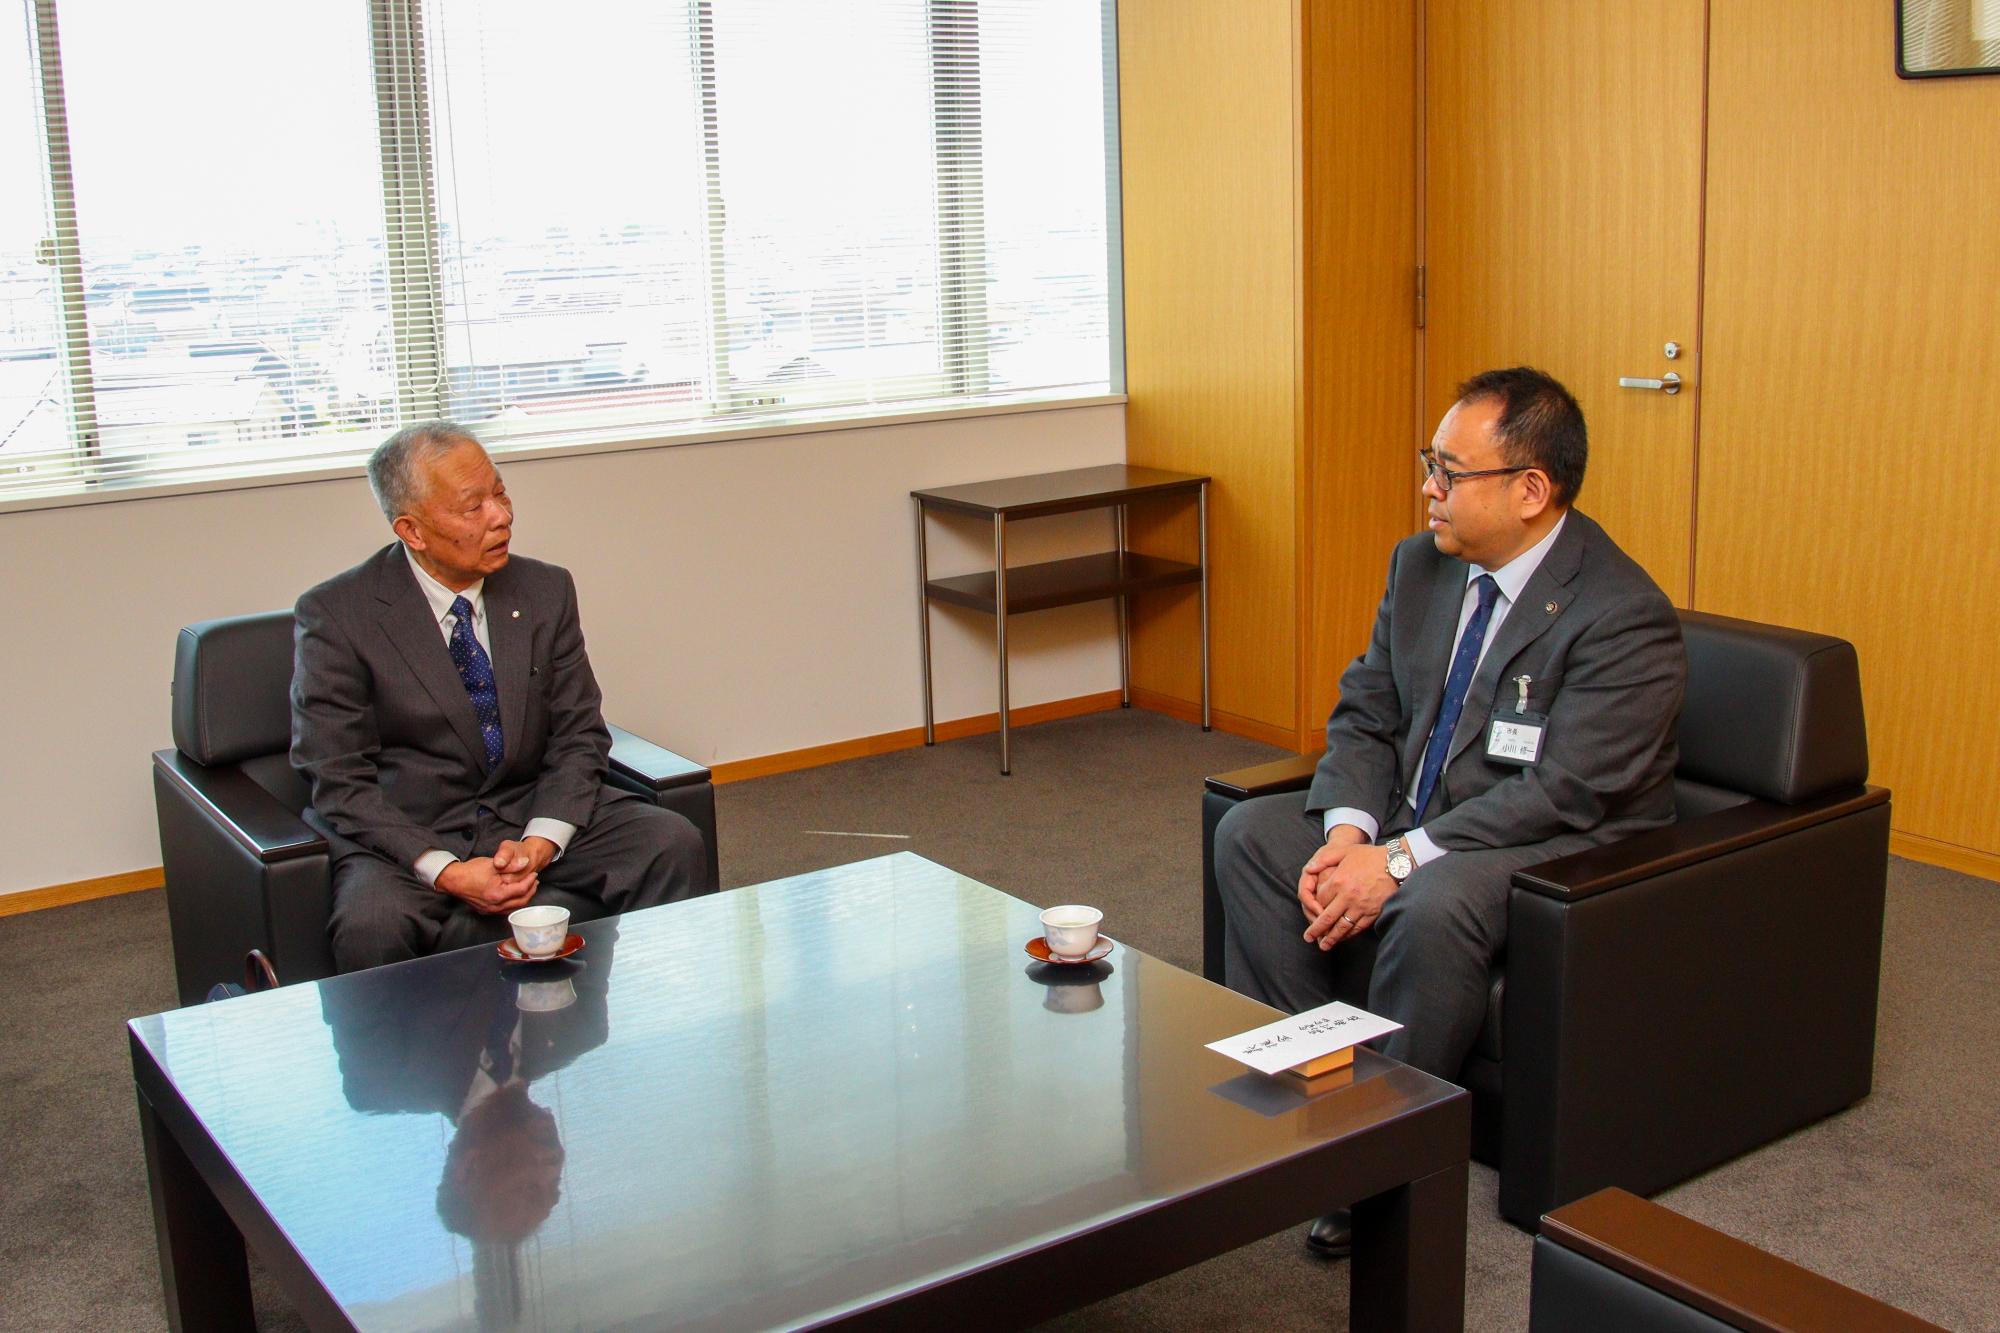 小川市長と高村代表取締役が懇談をしている写真。右が小川市長、左が高村代表取締役。